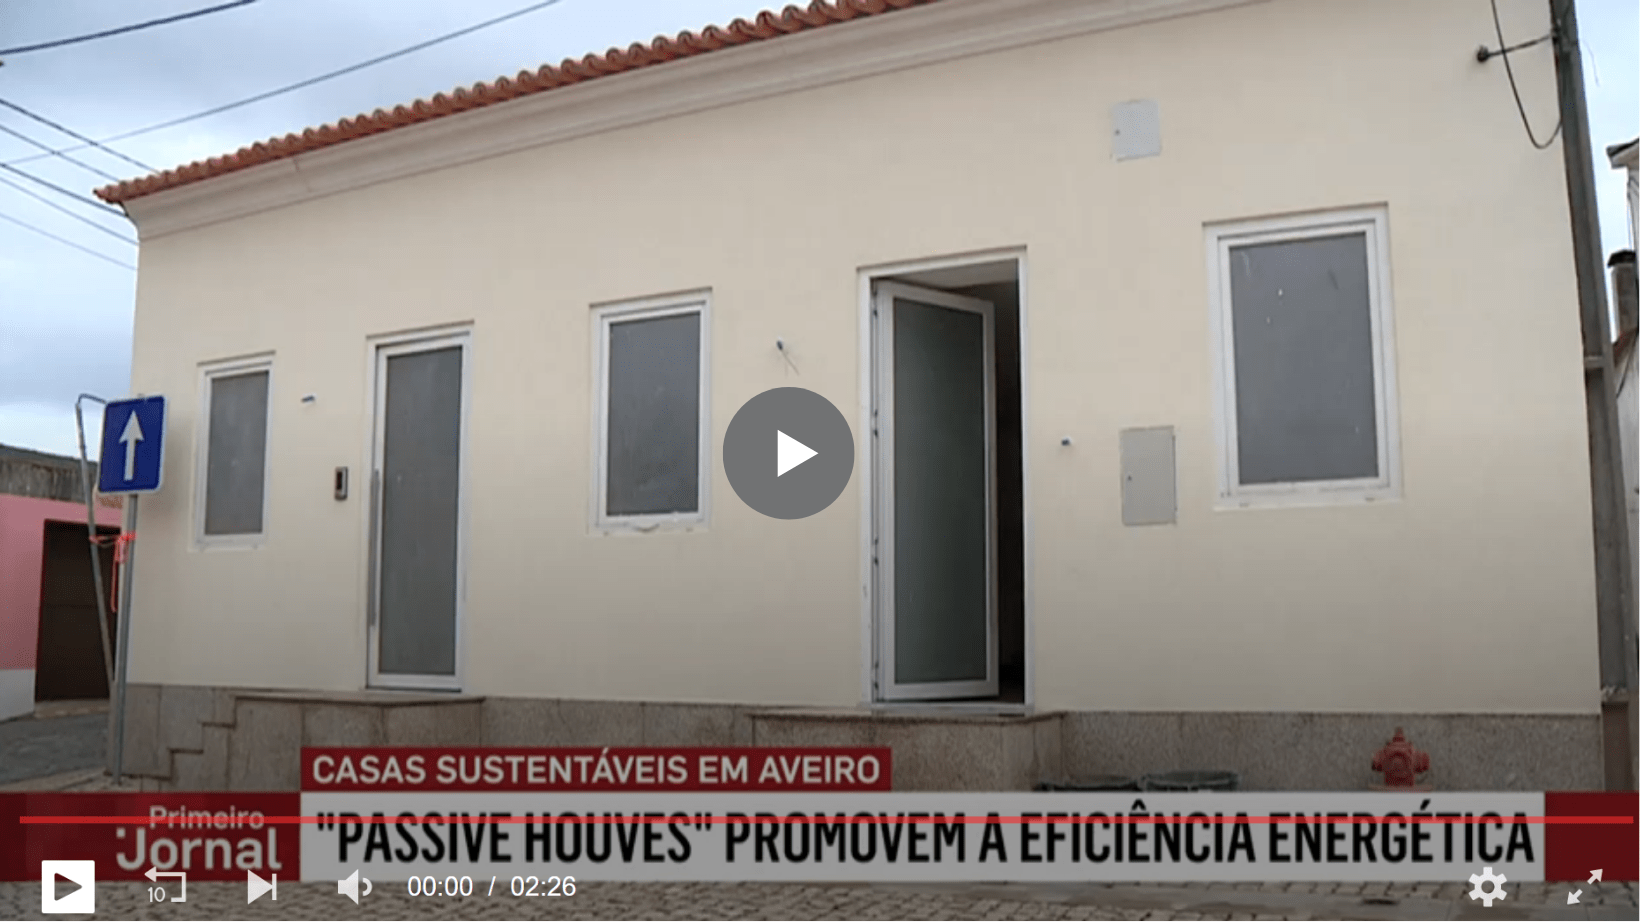 Casas “do futuro” que permitem poupar energia já chegaram a Portugal